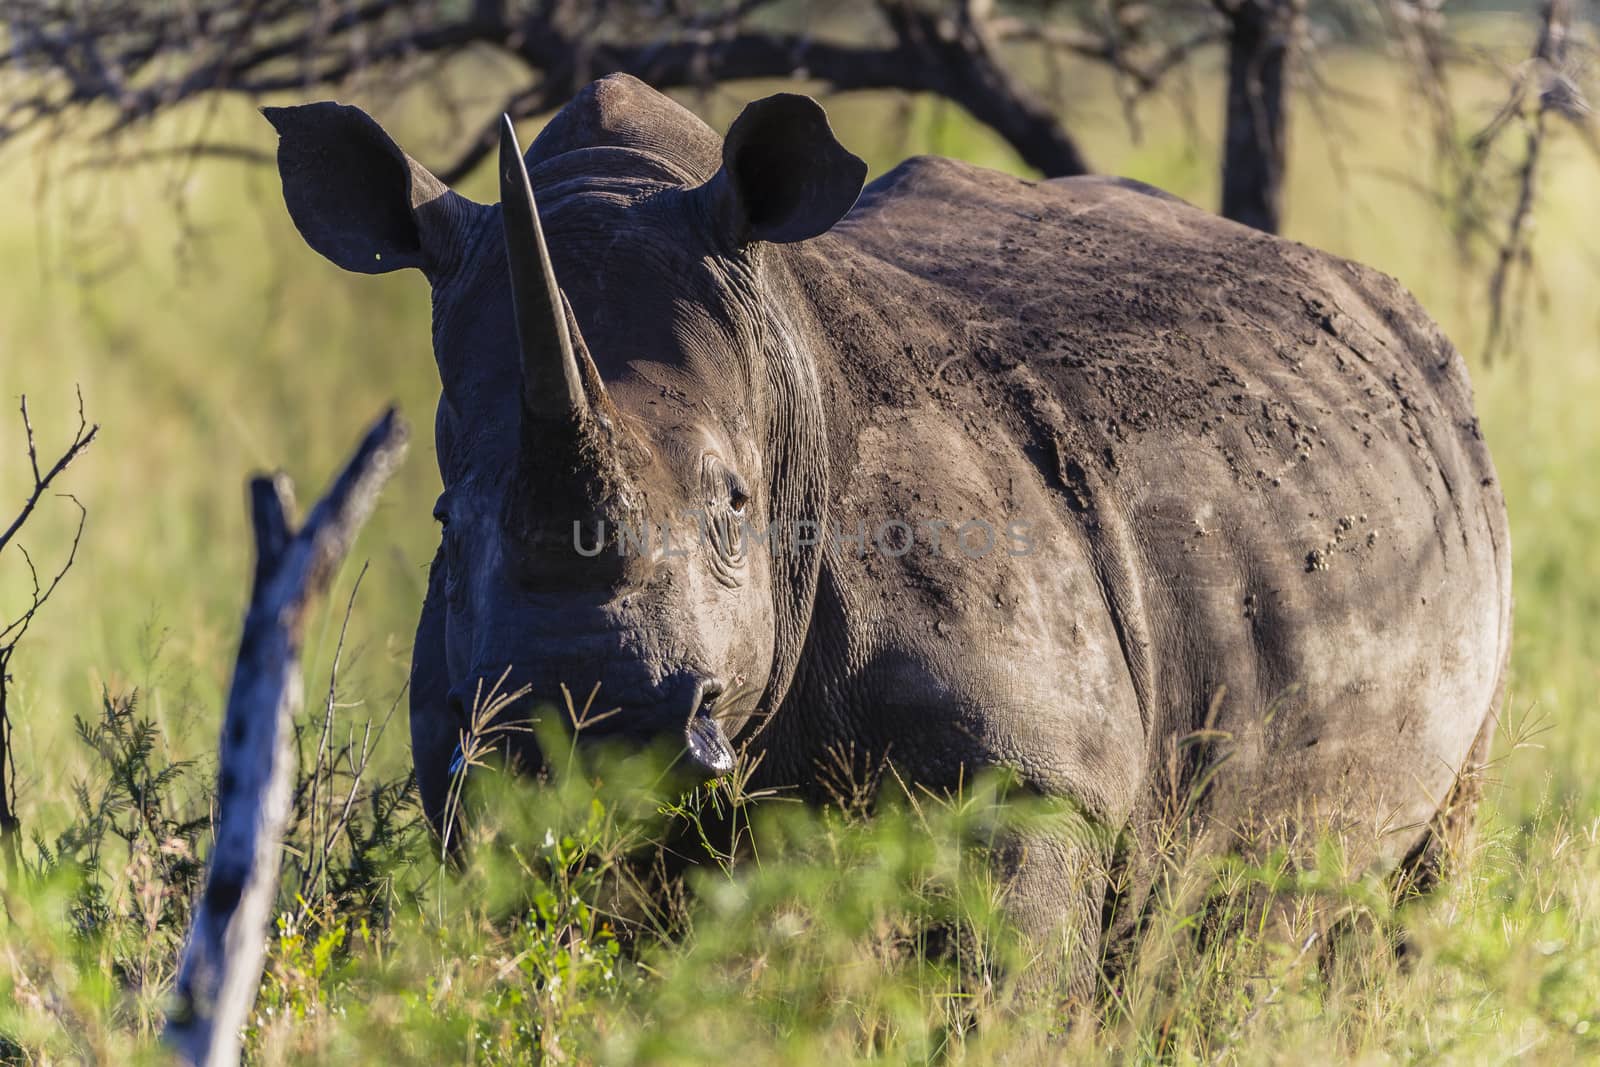 Rhino Animal Wildlife alert for dangers in landscape vegetation.